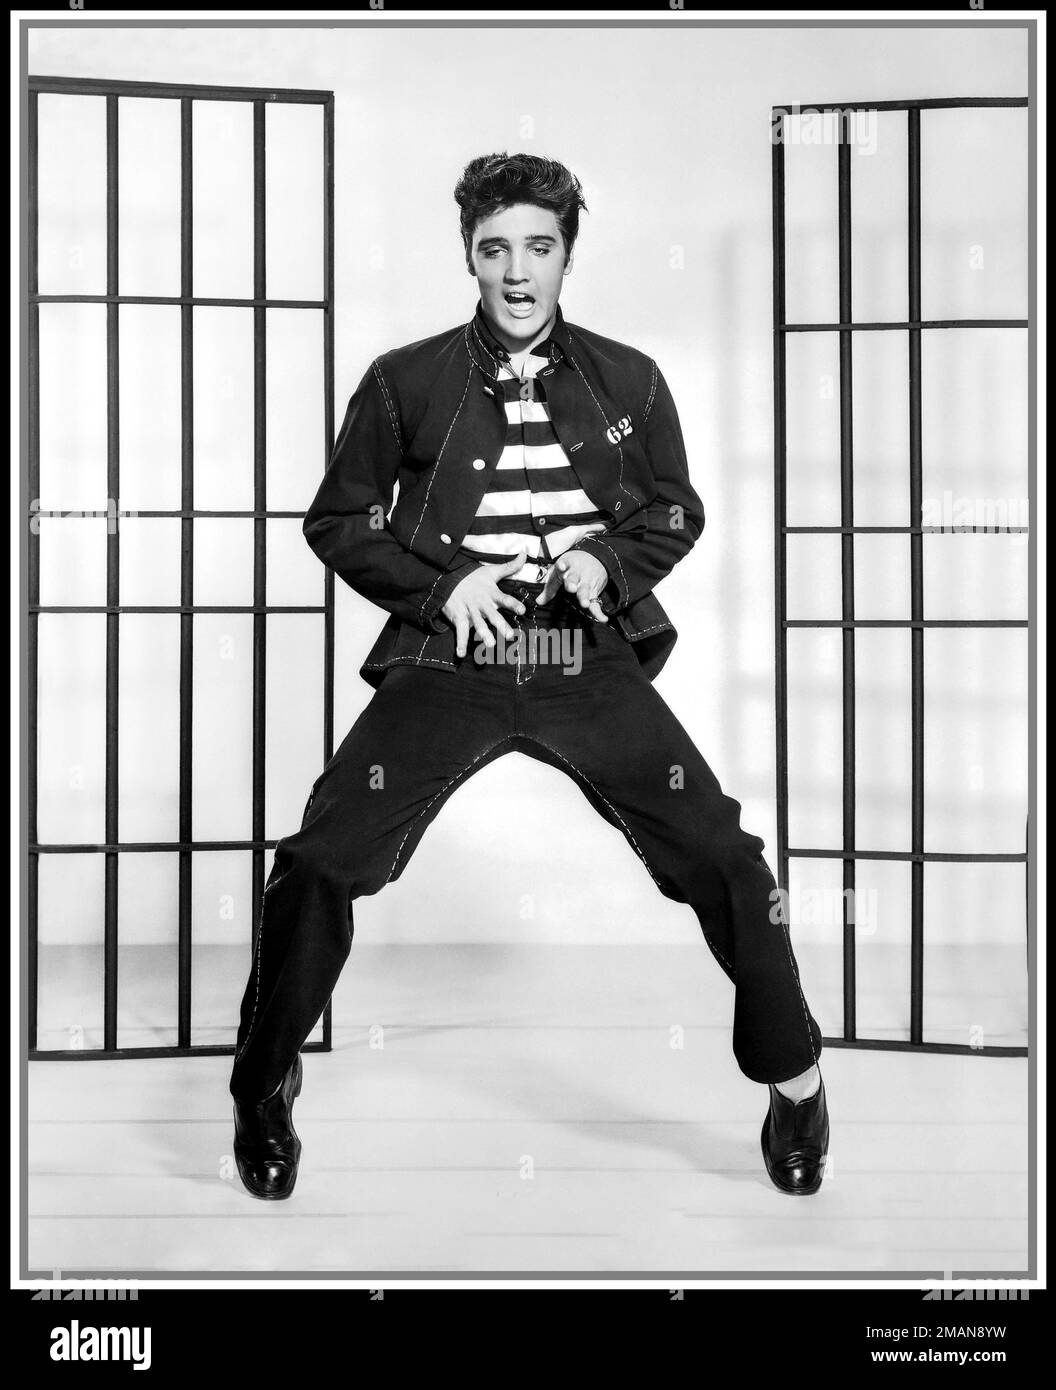 JAILHOUSE ROCK Elvis Presley film ancora tratto dall'iconico film e canzone "Jailhouse Rock" 1957 il testo della canzone inizia... "Warden ha organizzato una festa nella prigione della contea". Lo studio di pubblicità d'azione Elvis Presley promuove ancora il film 'Jailhouse Rock' Hollywood USA Foto Stock